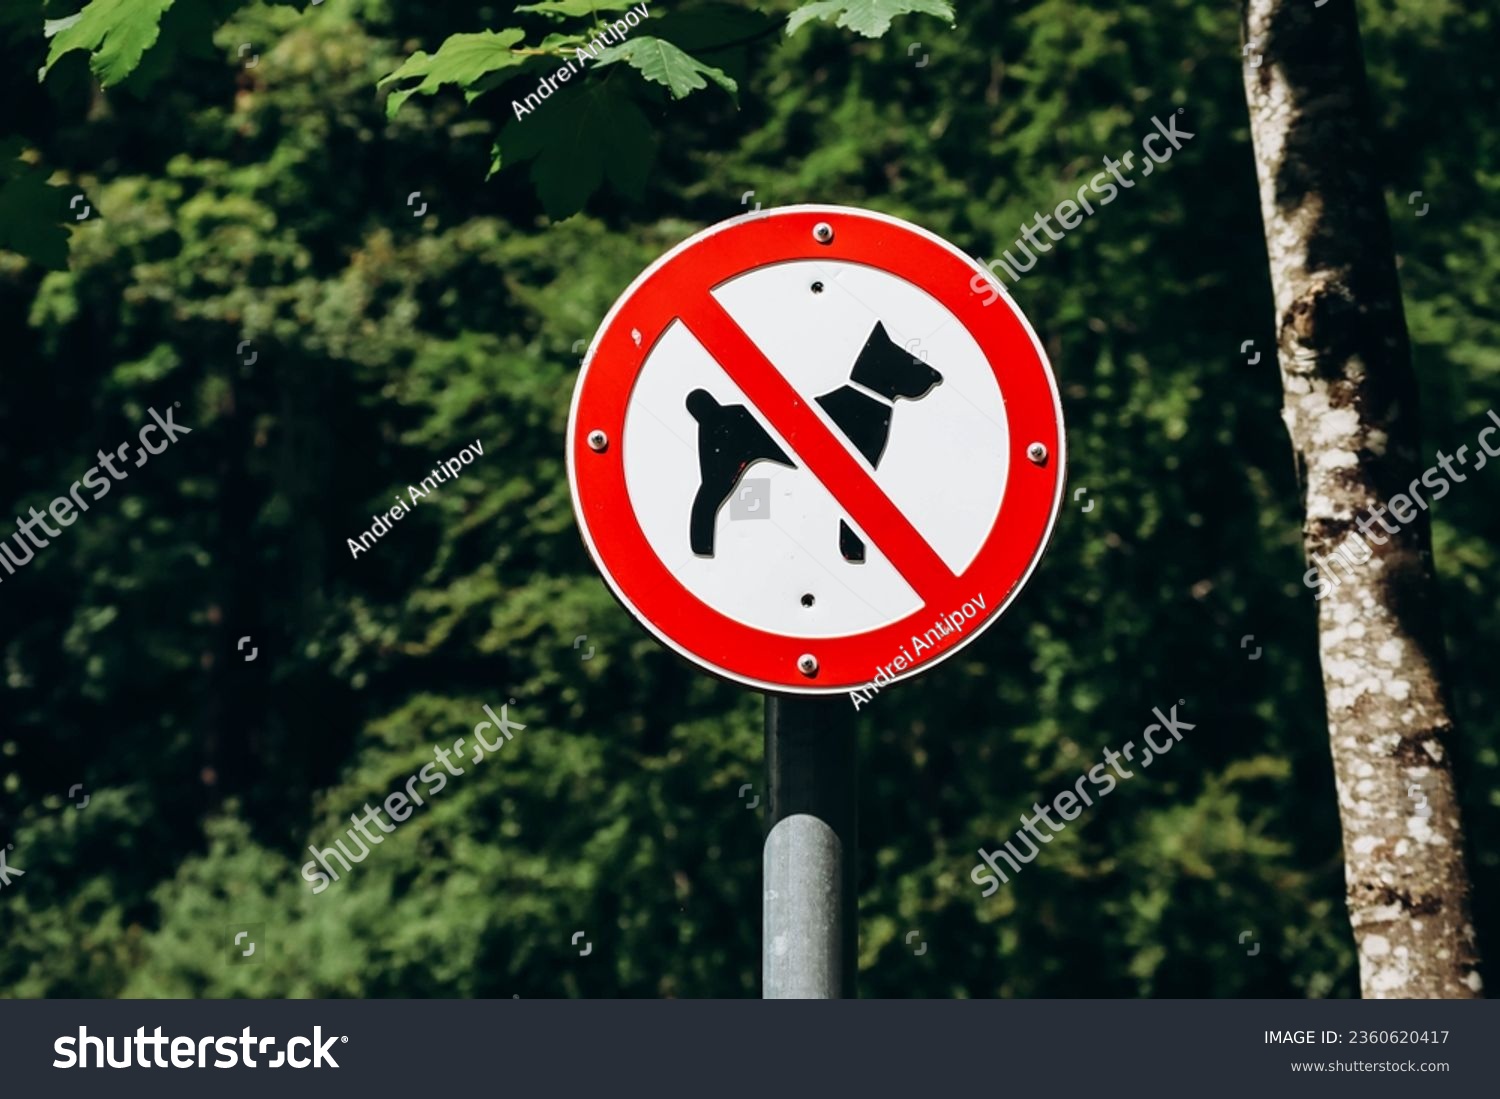 Dog prohibition sign, with tree foliage background, Bavaria, Germany #2360620417